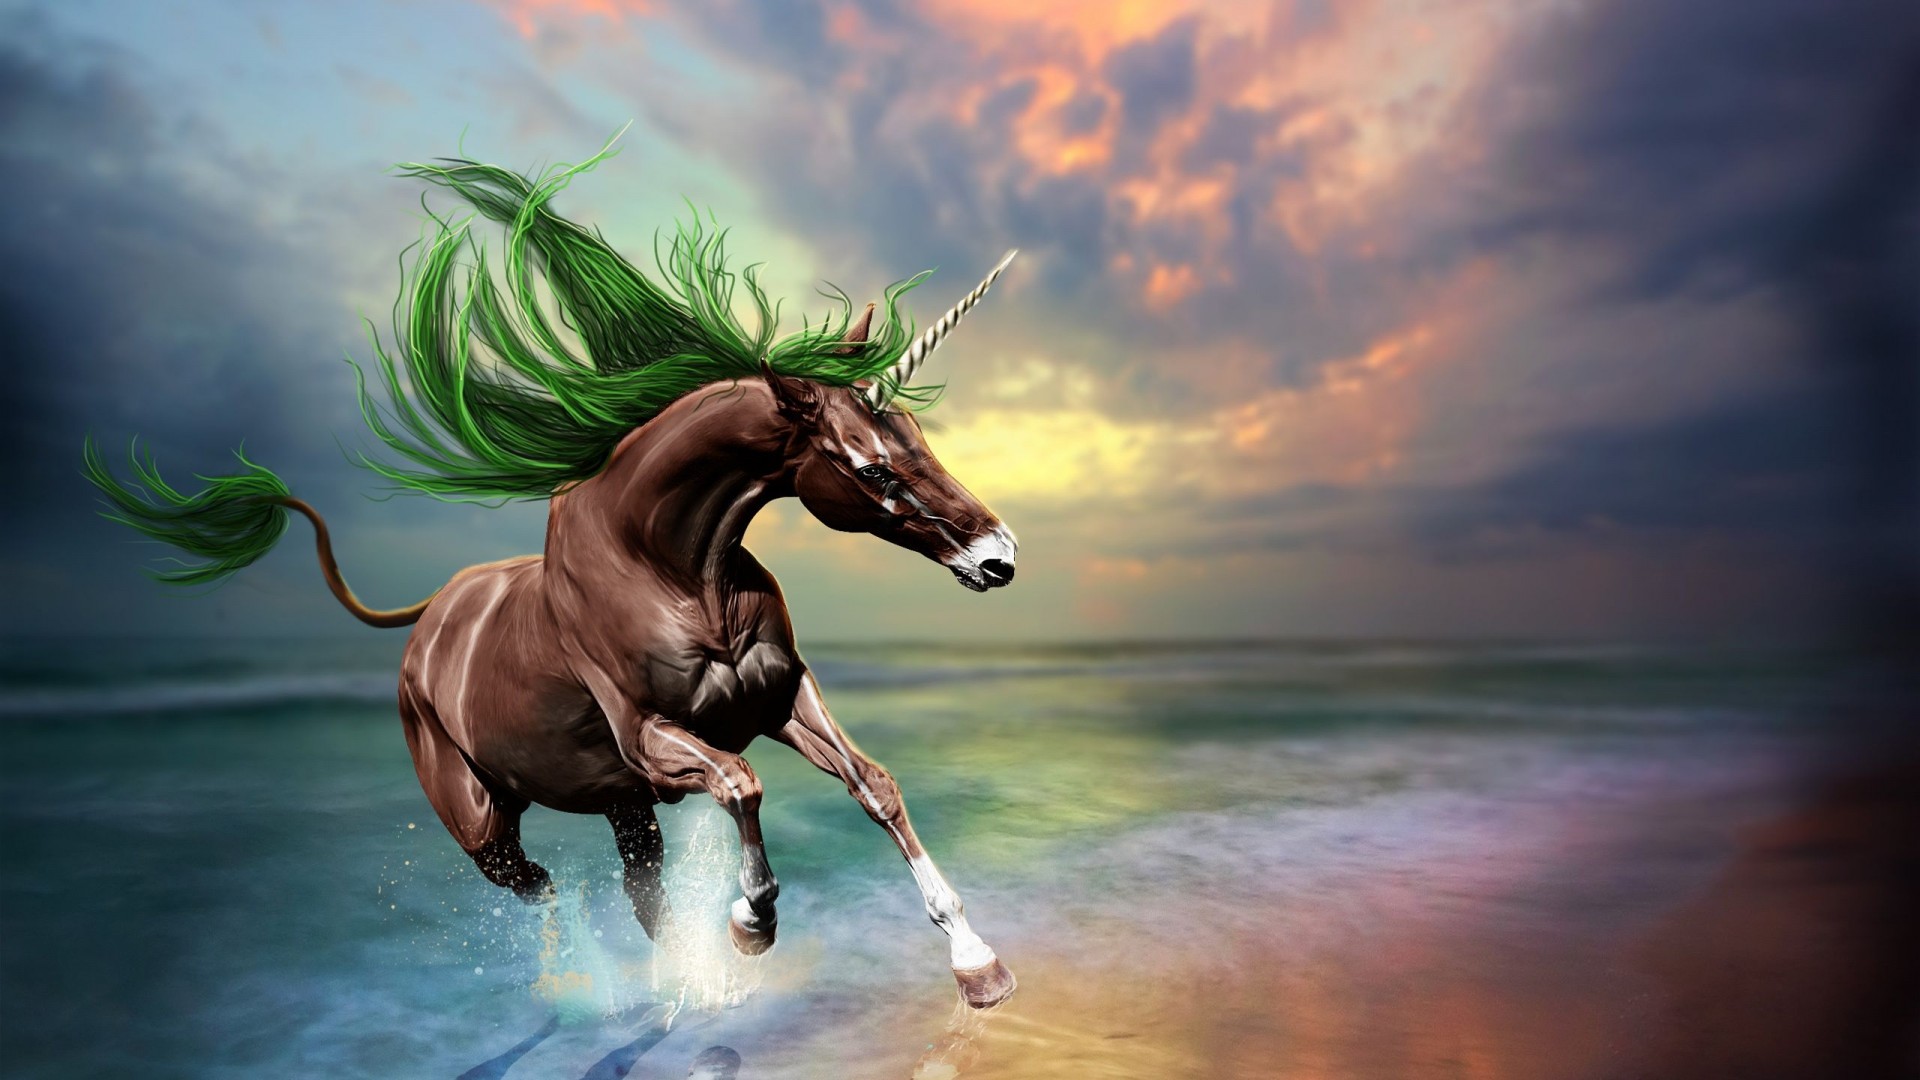 Unicorn Mermaid Desktop Wallpaper For